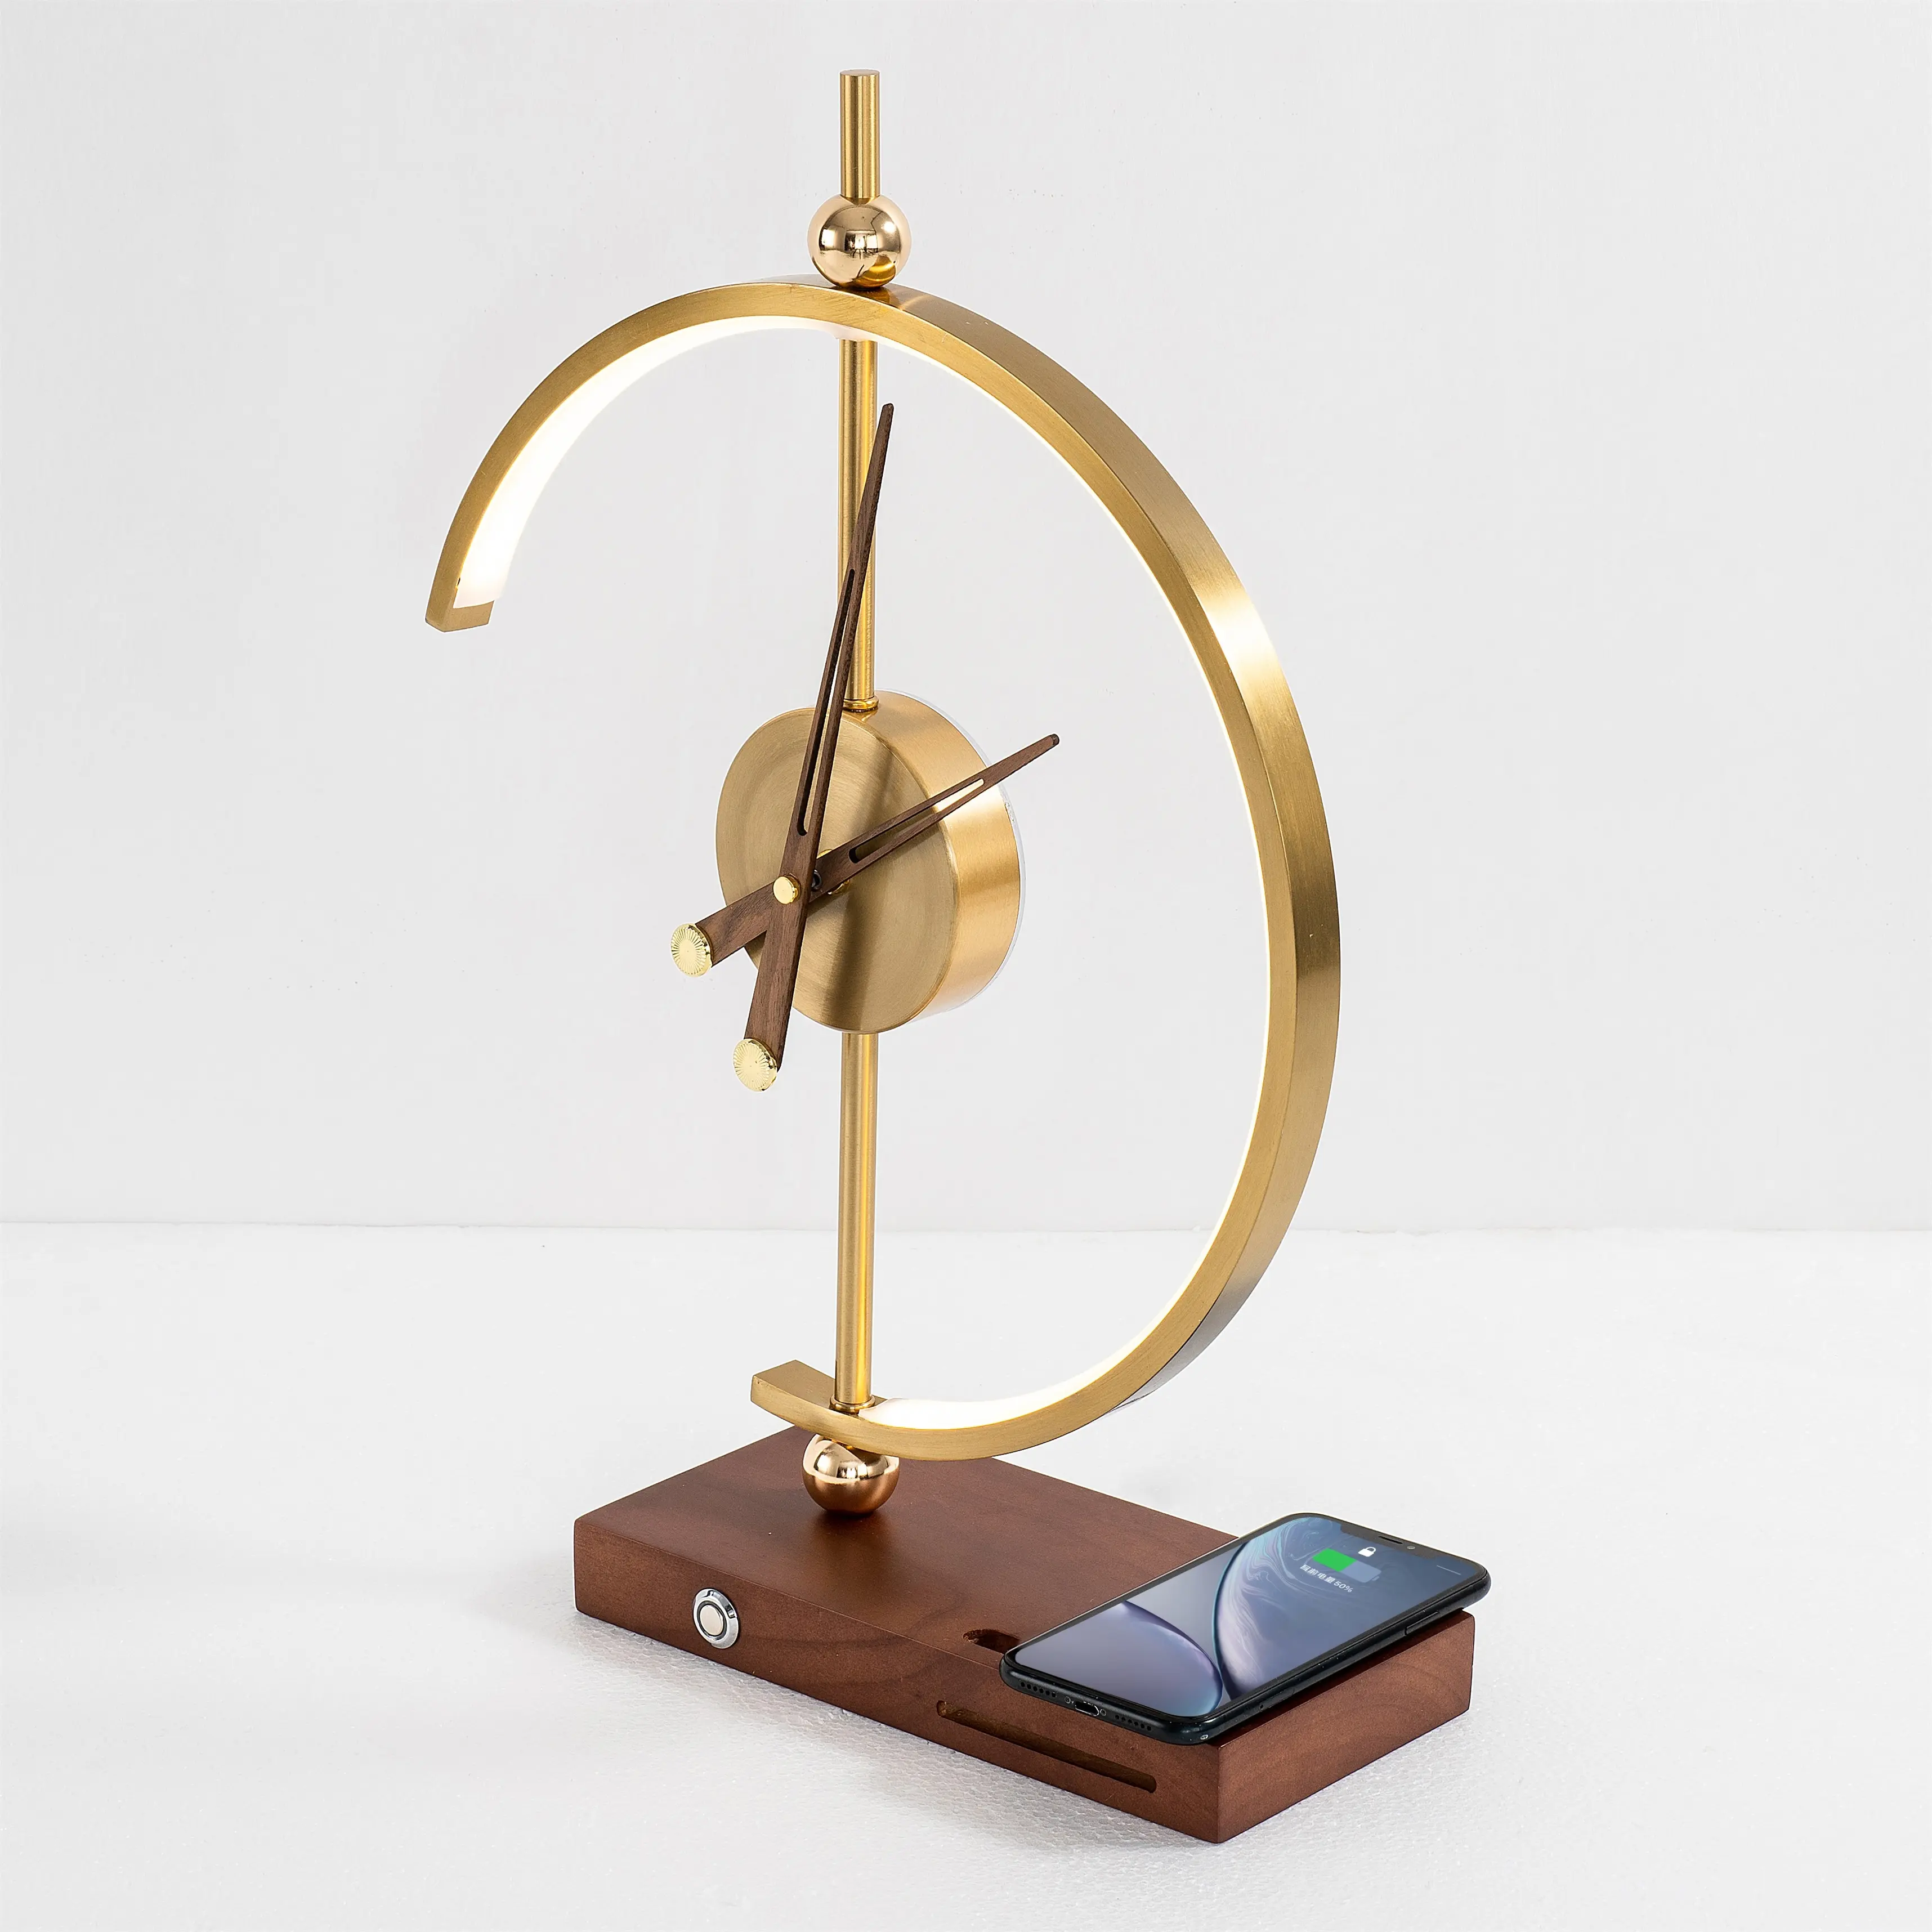 2022 Trending Product Nieuwe Collectie Dimbare Led Klok Lamp Met Elegante Klok En Qi Draadloze Oplader Usb-poort Voor Telefoon